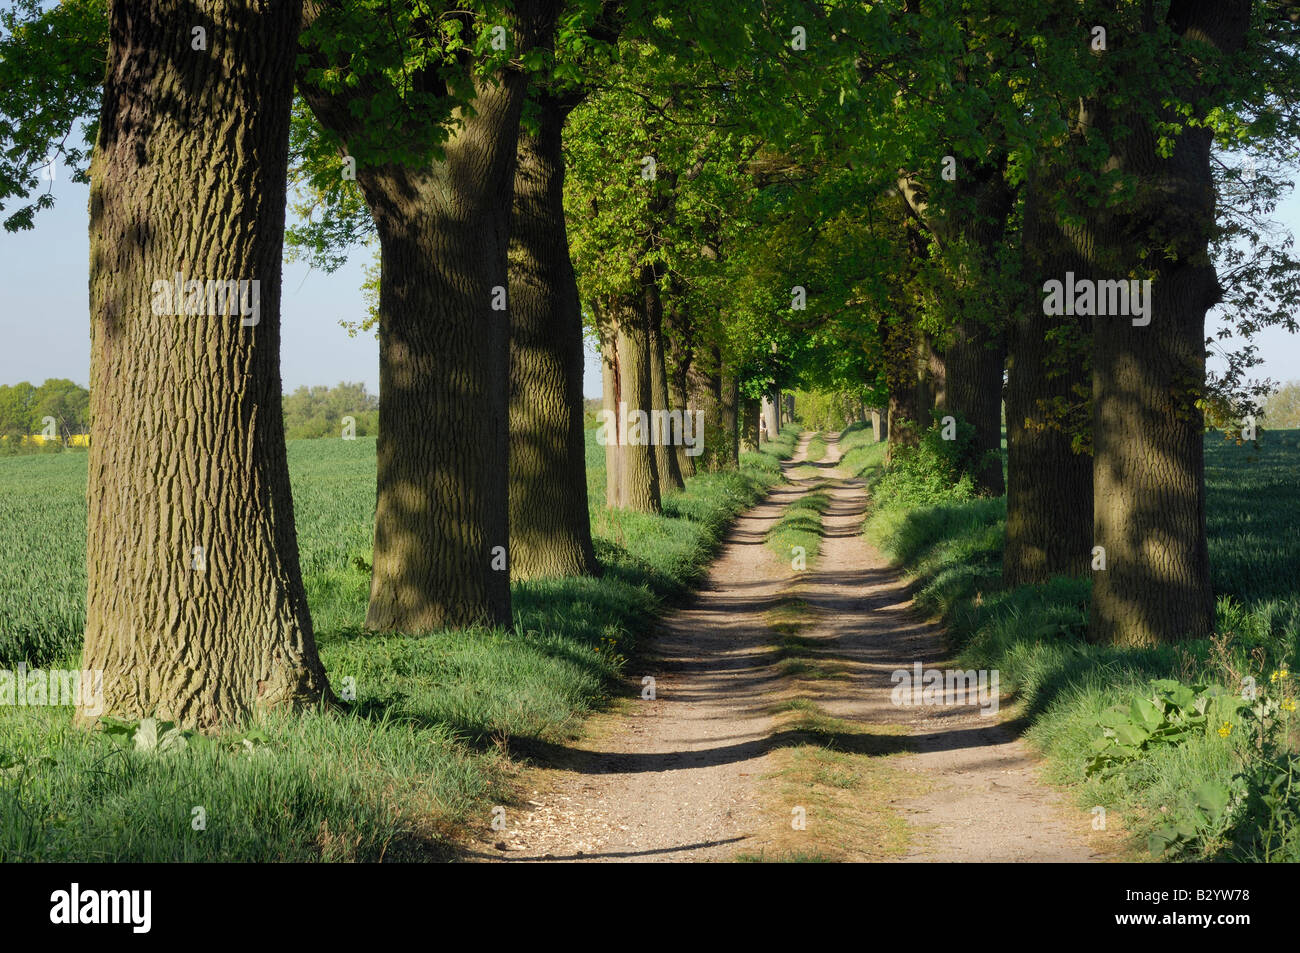 Bäumen gesäumten Straße, Mecklenburg-Vorpommern, Deutschland Stockfoto